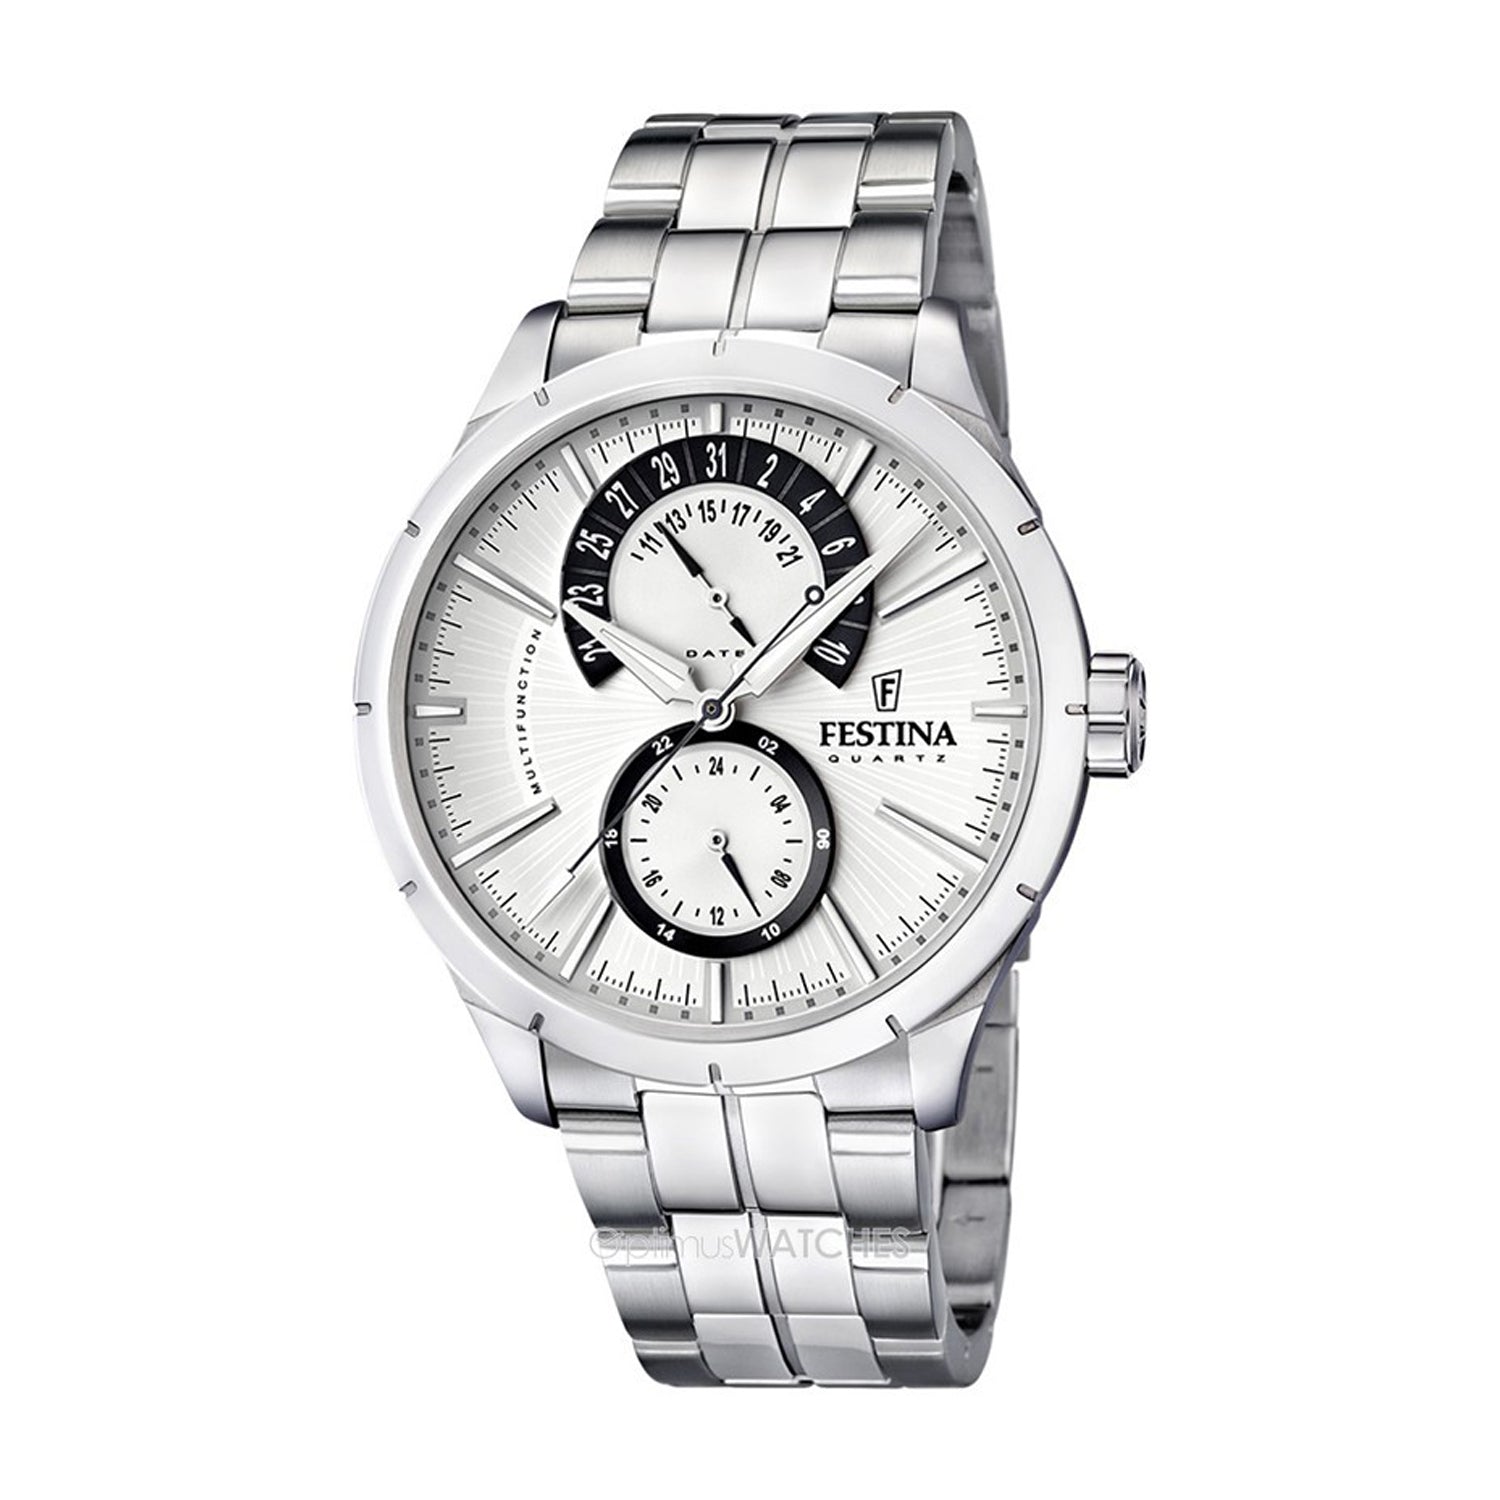 Festina Men's White Dial Quartz Watch - F16632/5